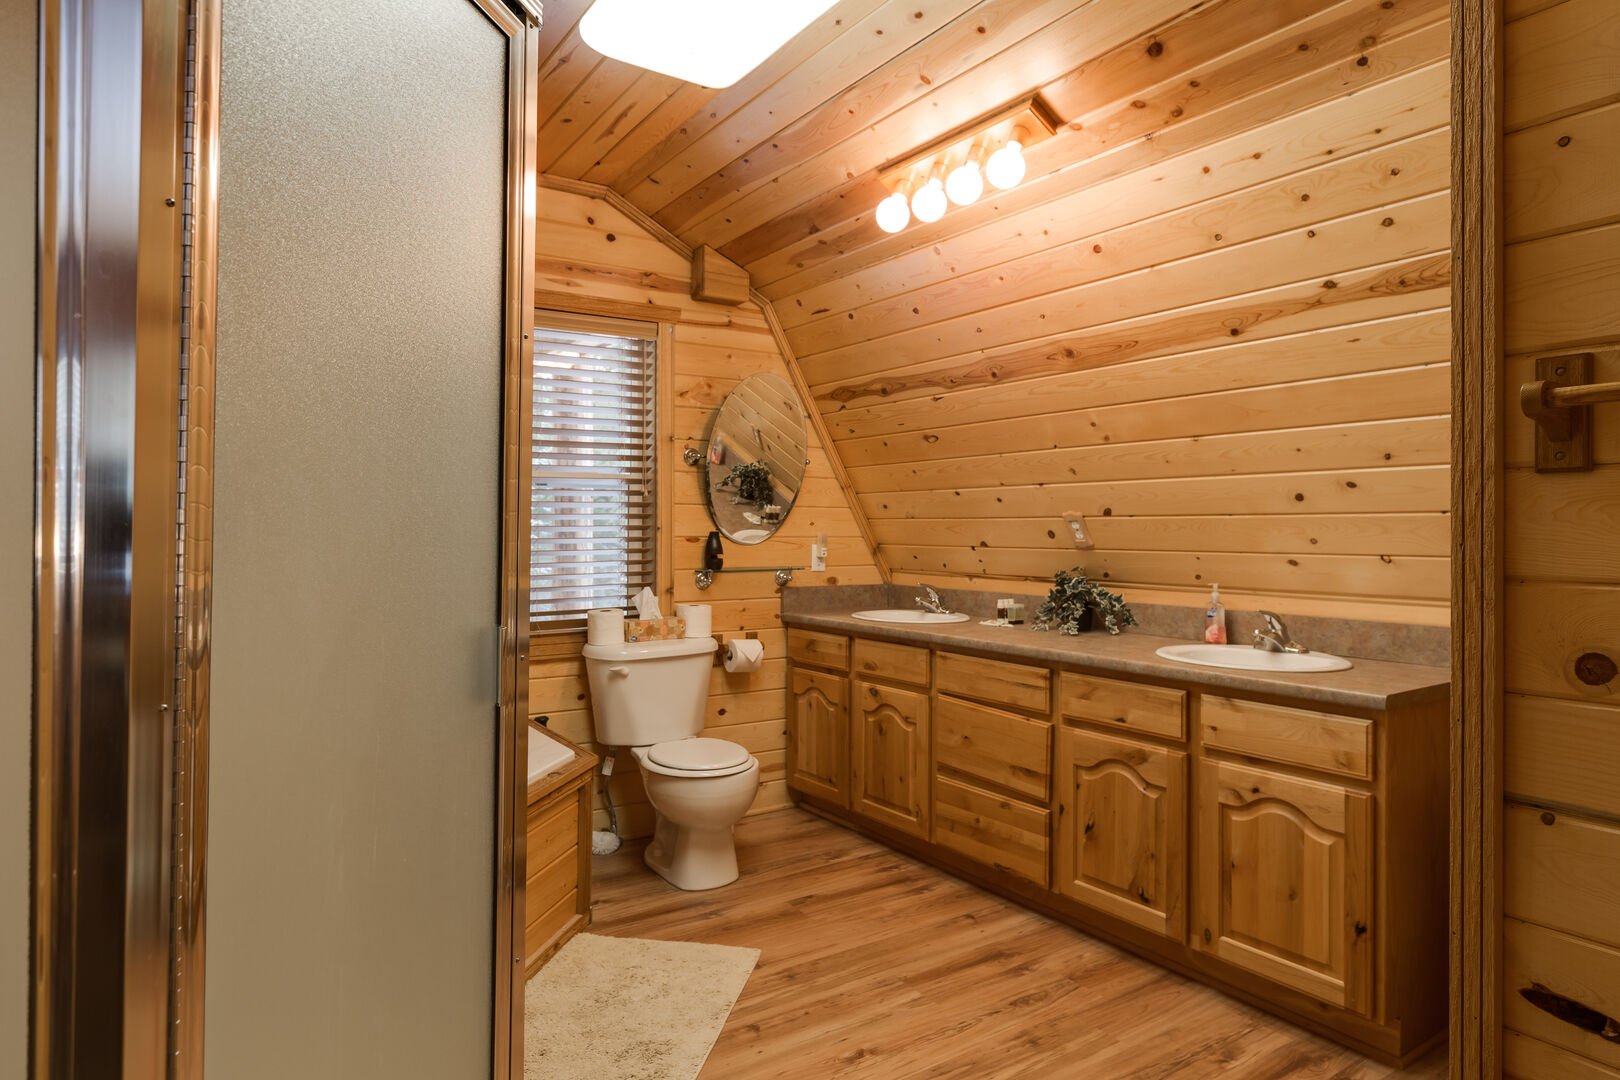 Roger Dodger ~ shared full bathroom in main house on upper level